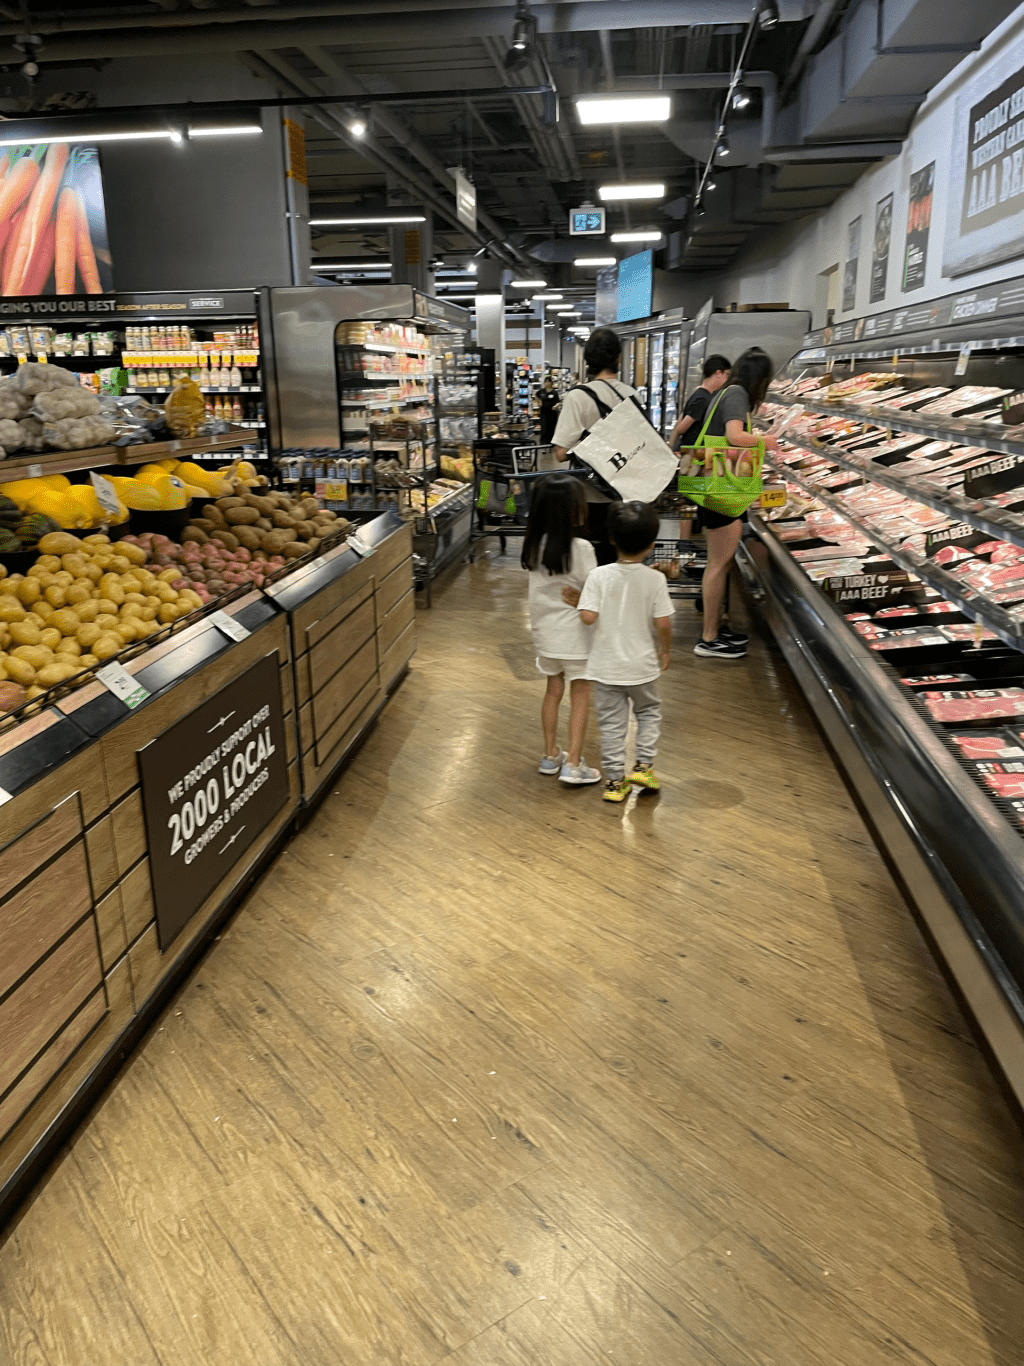 锺嘉欣老公被拍到带住两个小朋友去超市购物。